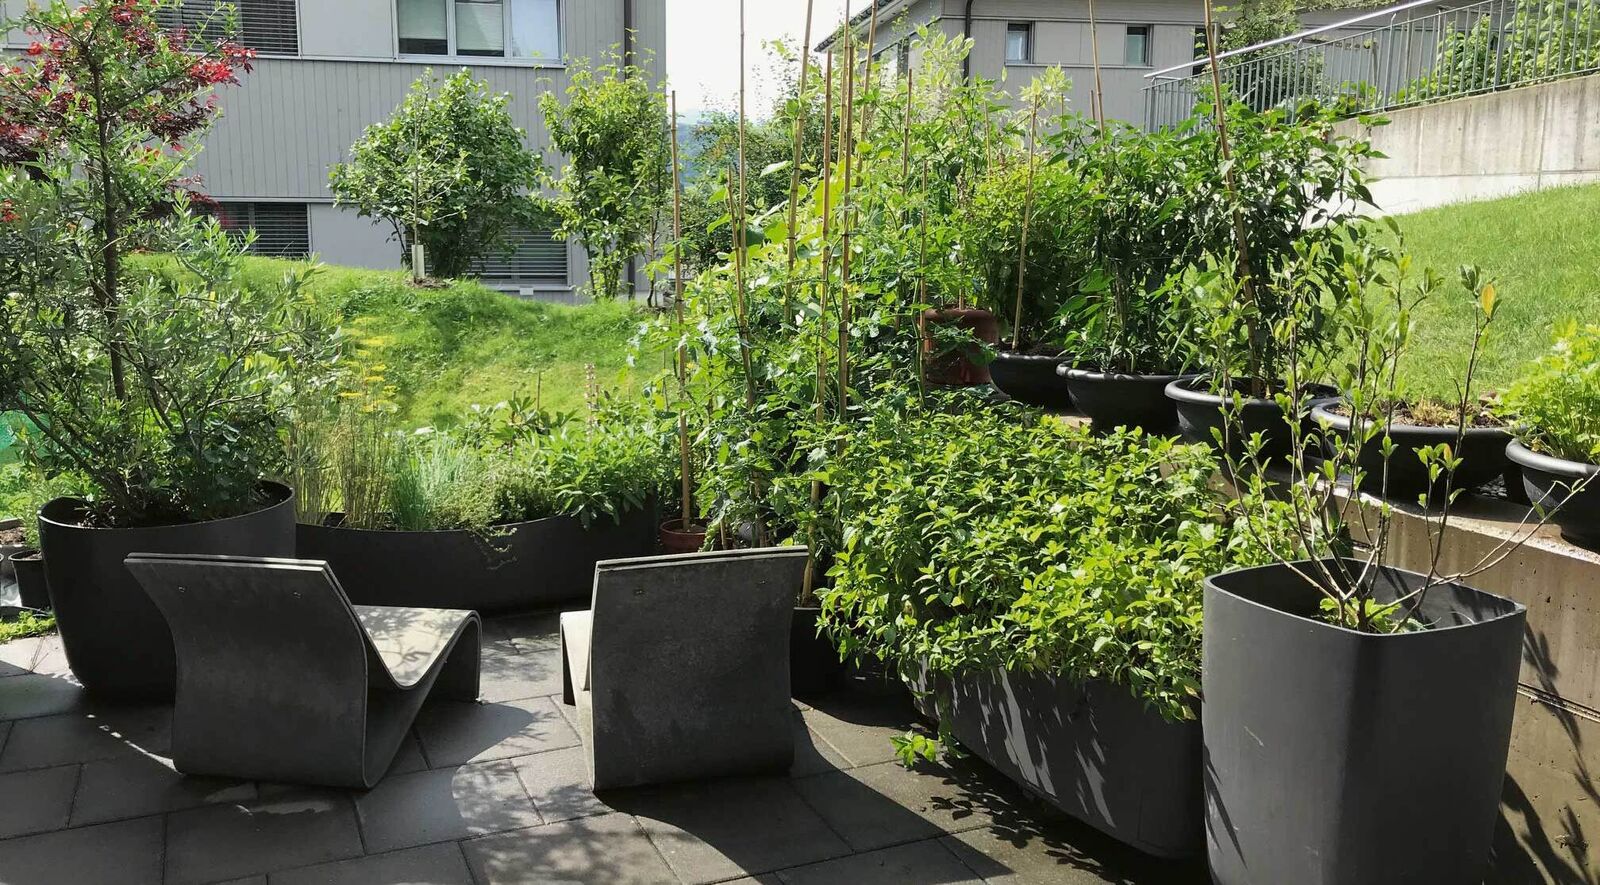 Jeder sonnige, windgeschützte Platz eignet sich für einen Mini-Garten.